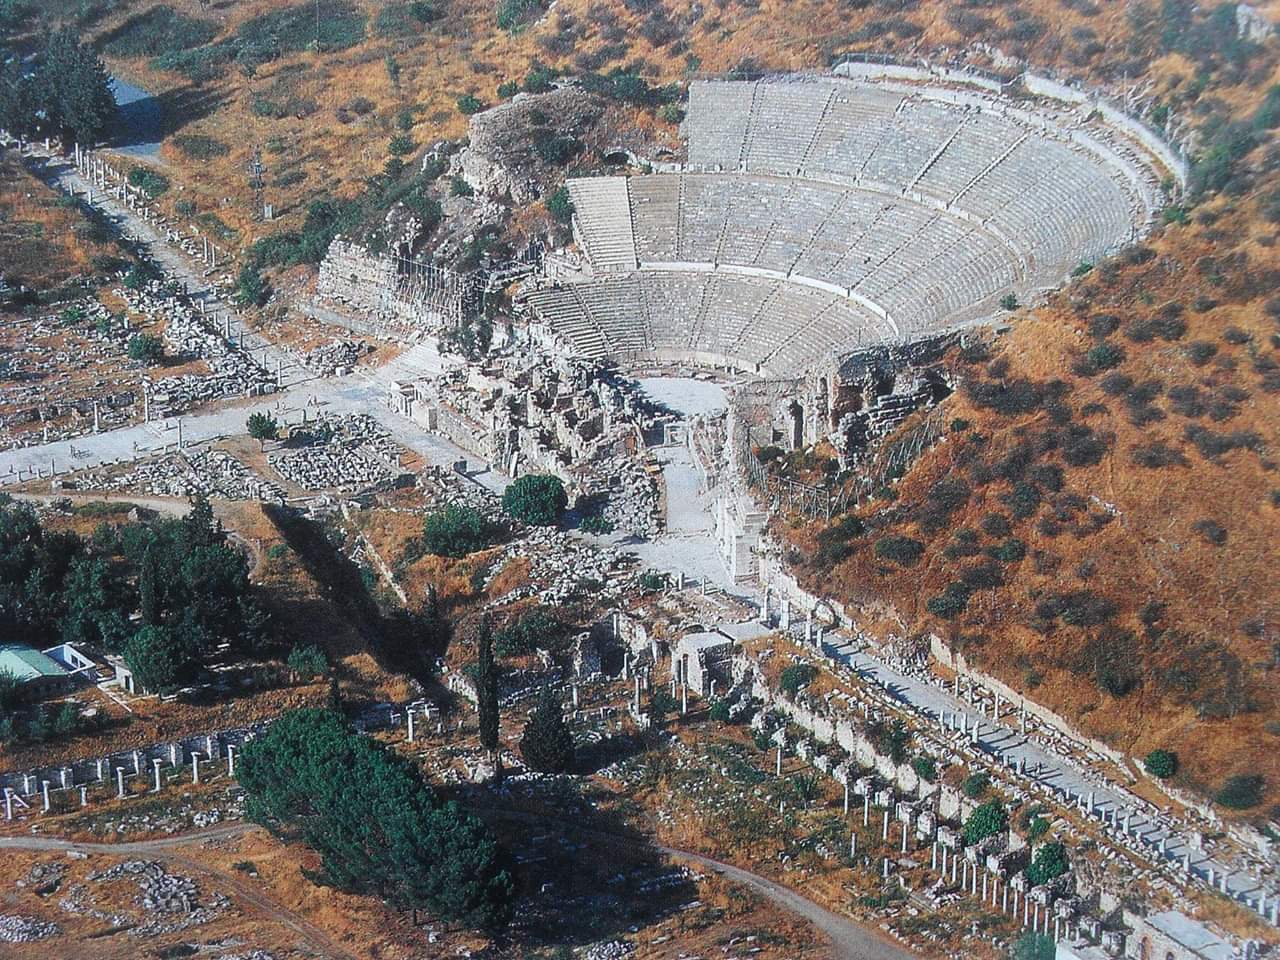 Birds eye view of Ephesus Amphitheatre